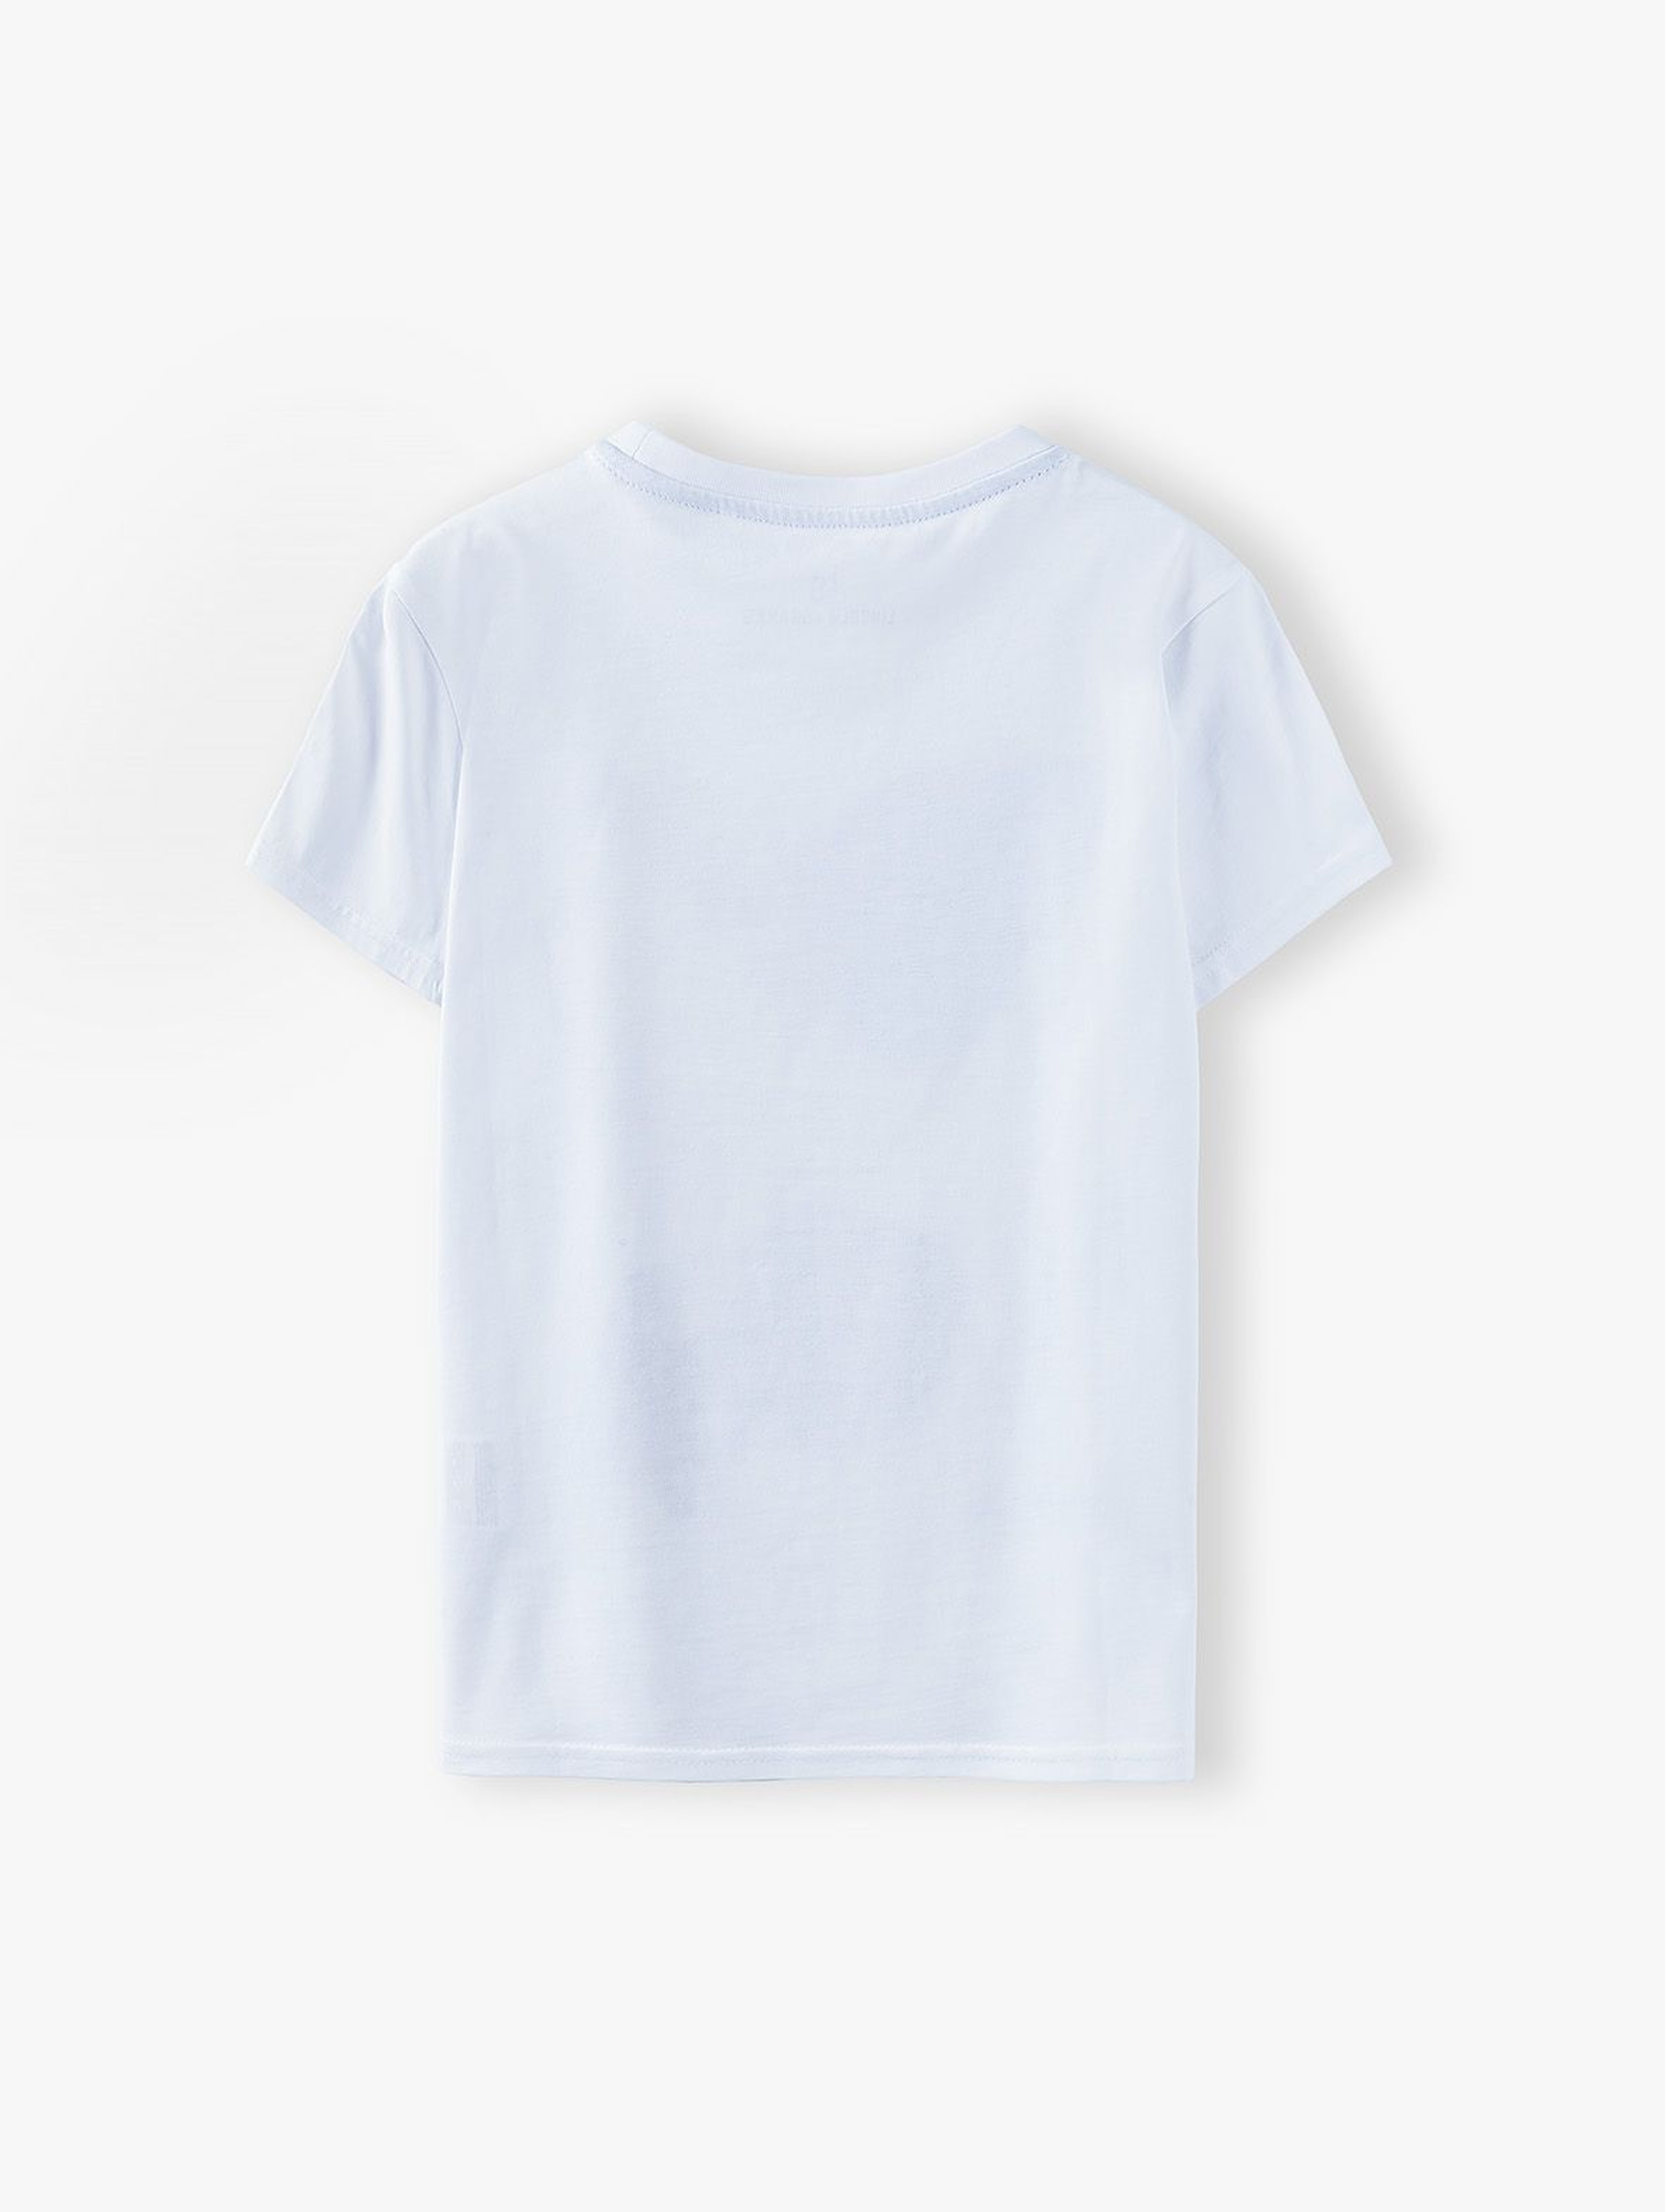 T-shirt chłopięcy biały z nadrukiem Ocean